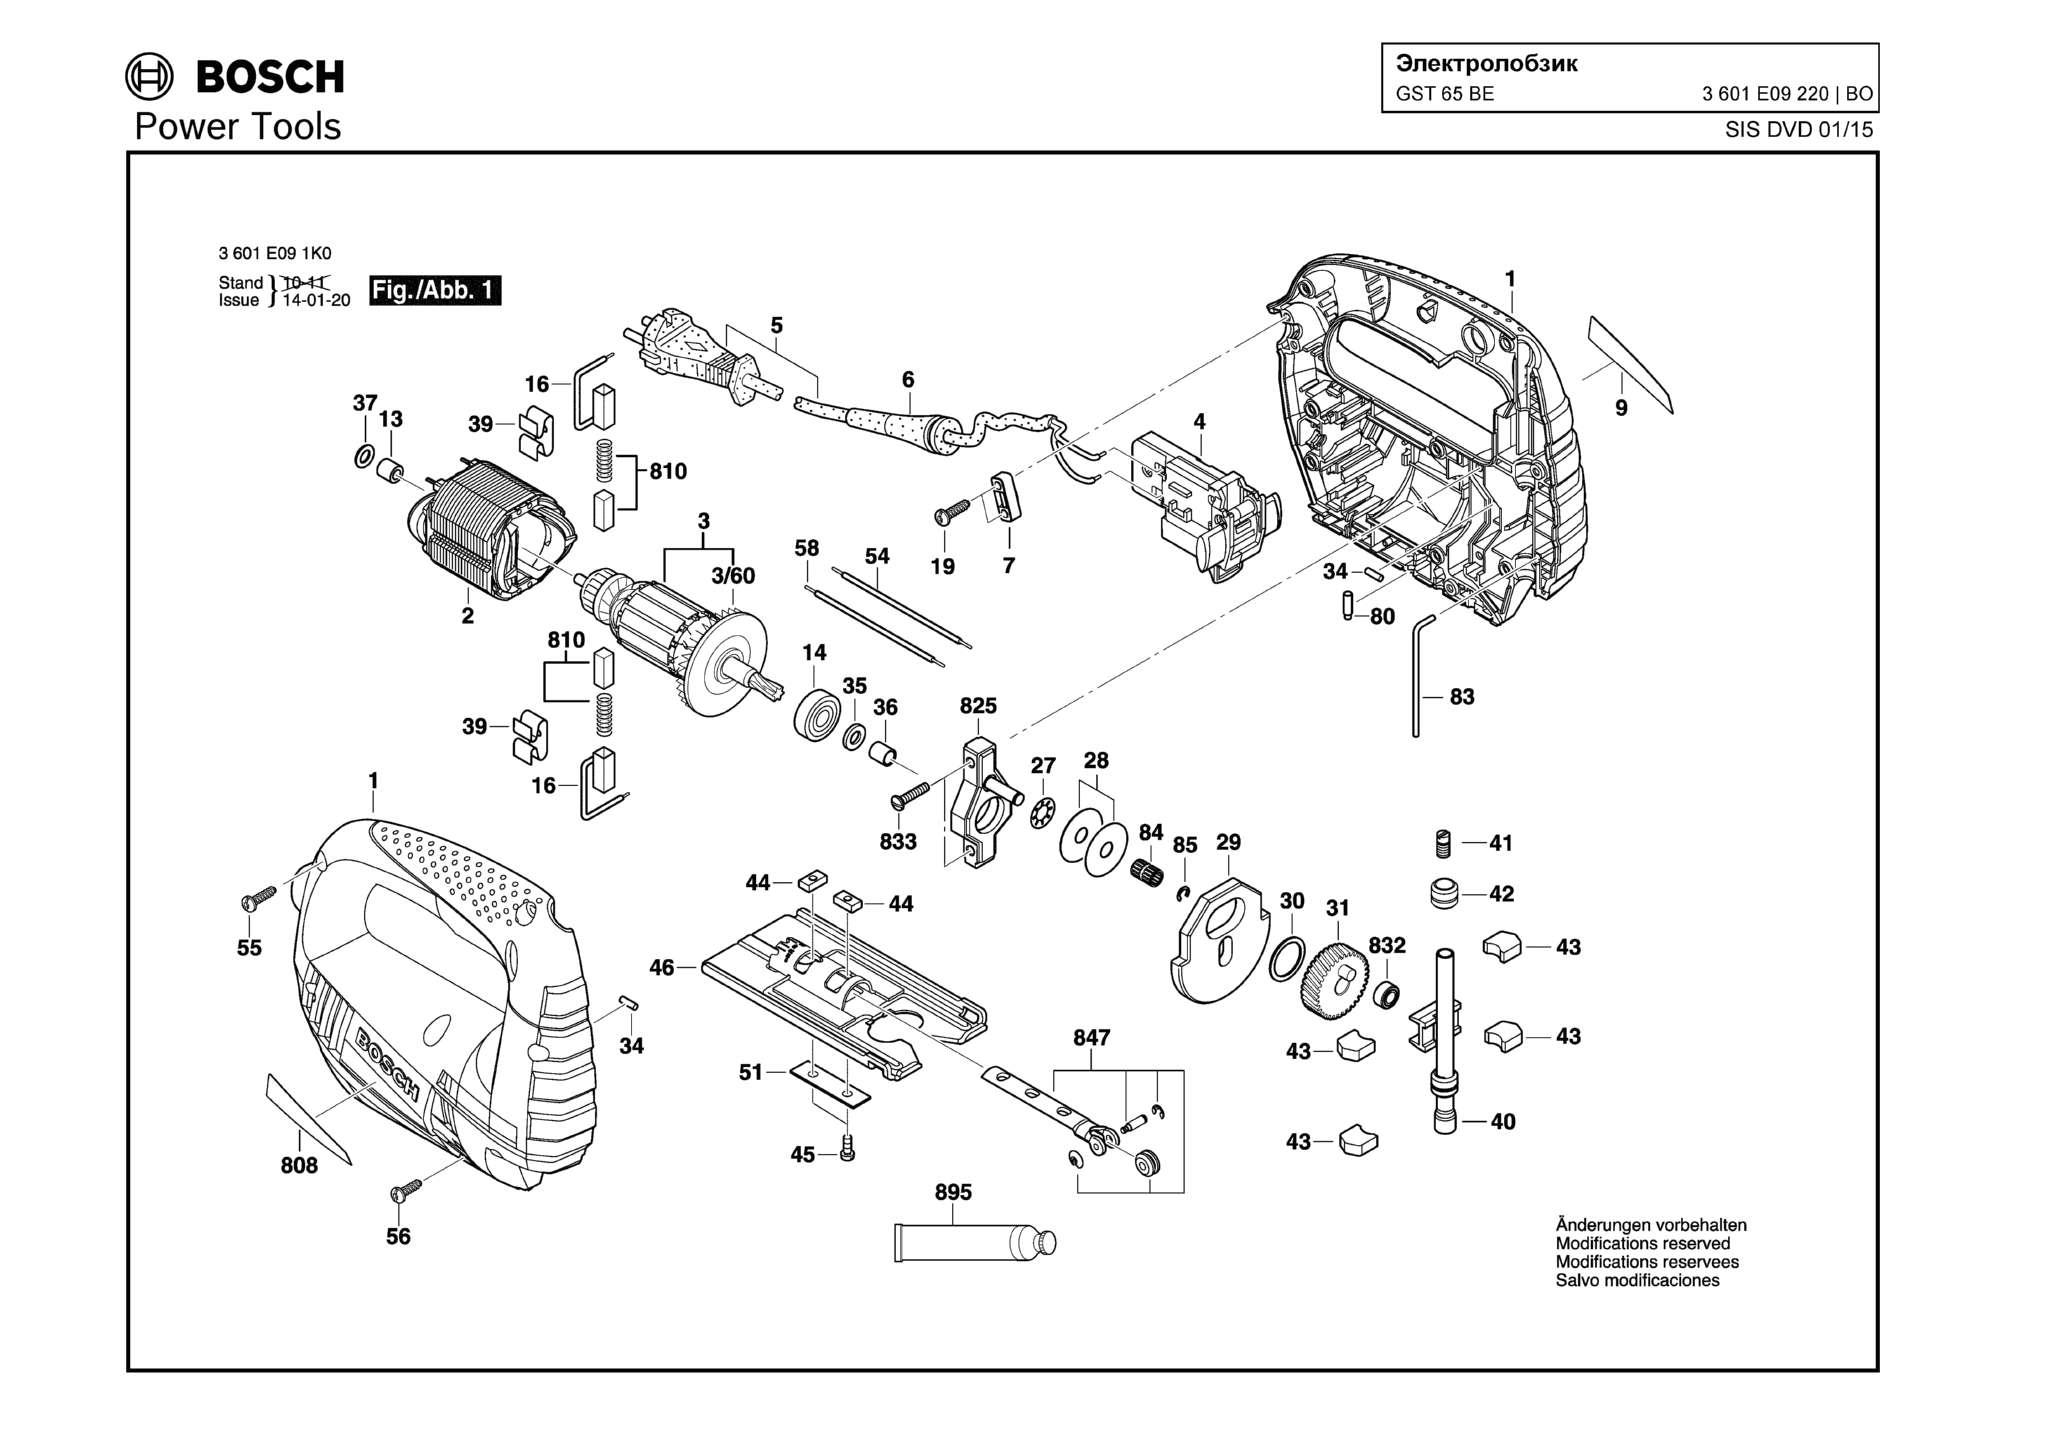 Запчасти, схема и деталировка Bosch GST 65 BE (ТИП 3601E09220)